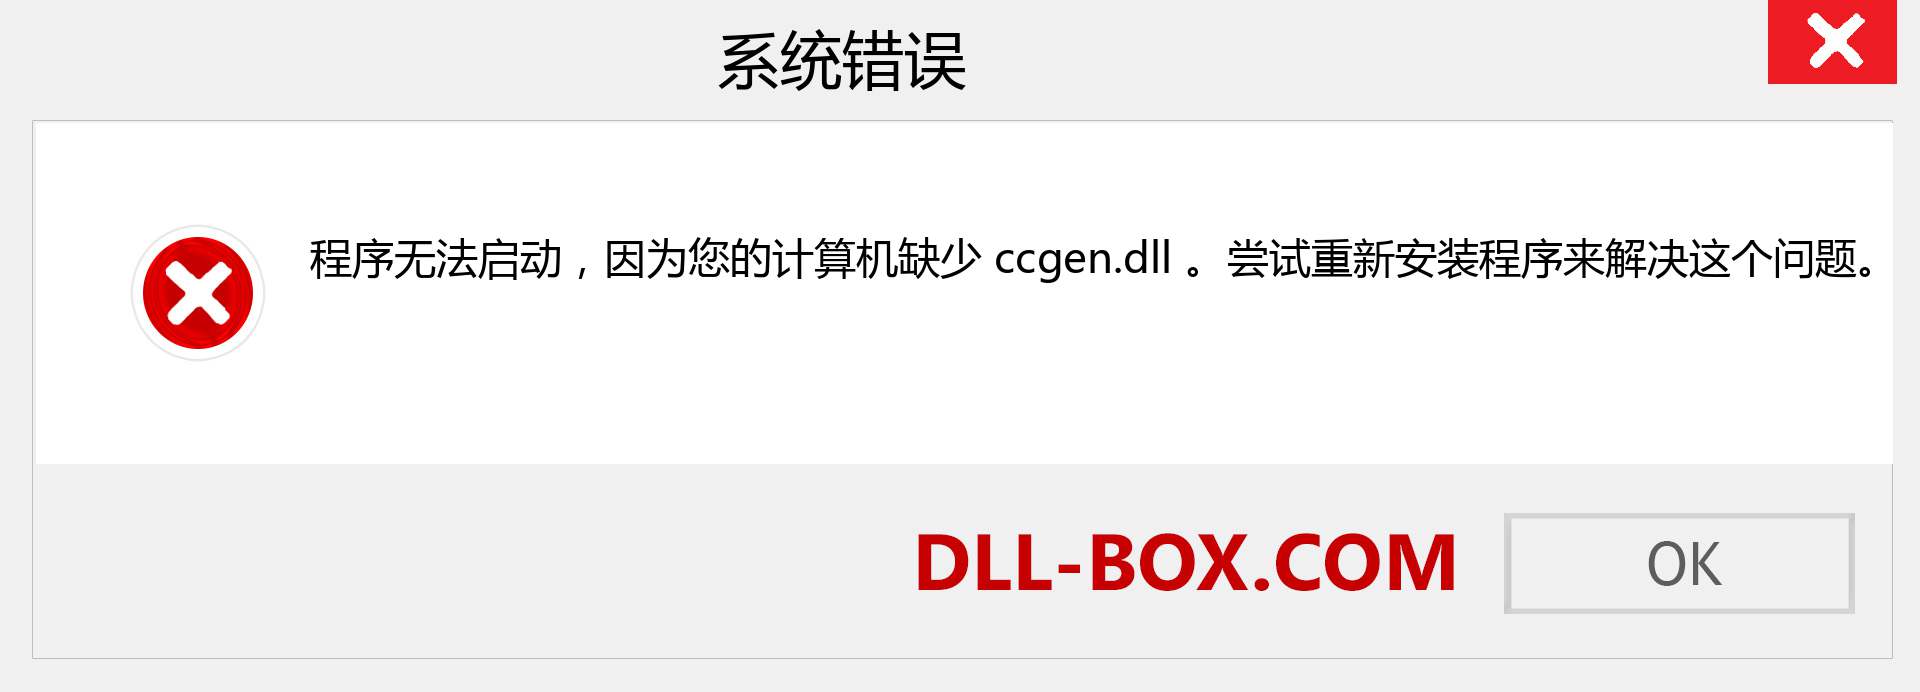 ccgen.dll 文件丢失？。 适用于 Windows 7、8、10 的下载 - 修复 Windows、照片、图像上的 ccgen dll 丢失错误